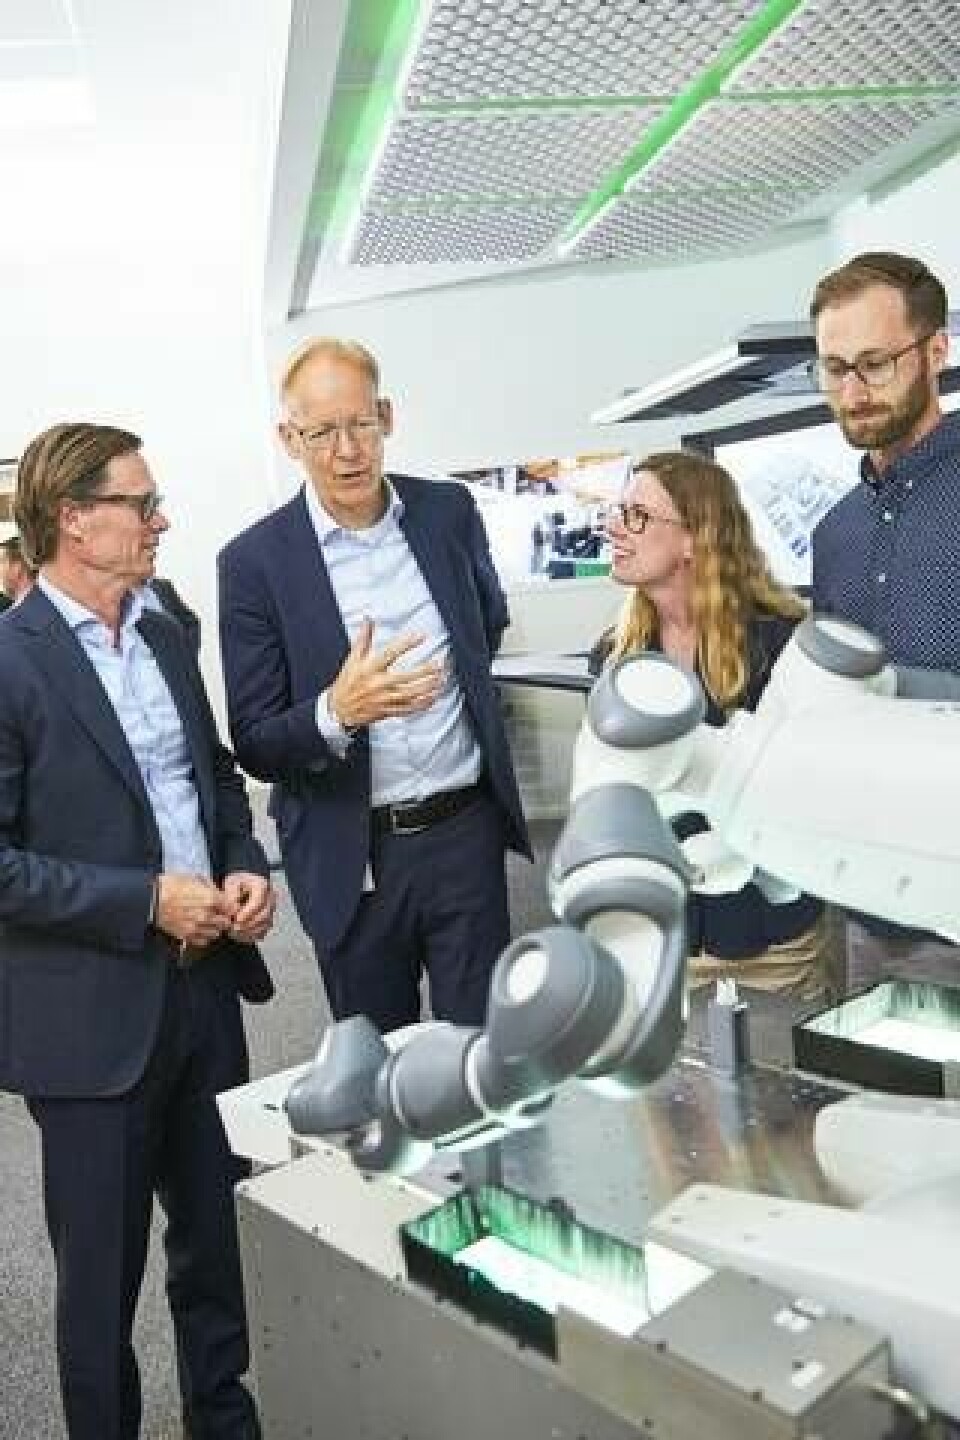 Johan Rittner, till vänster, är vd för IBM i Sverige och får en visning av ABB-roboten Yumi av Johan Söderström. Foto: Pia Nordlander